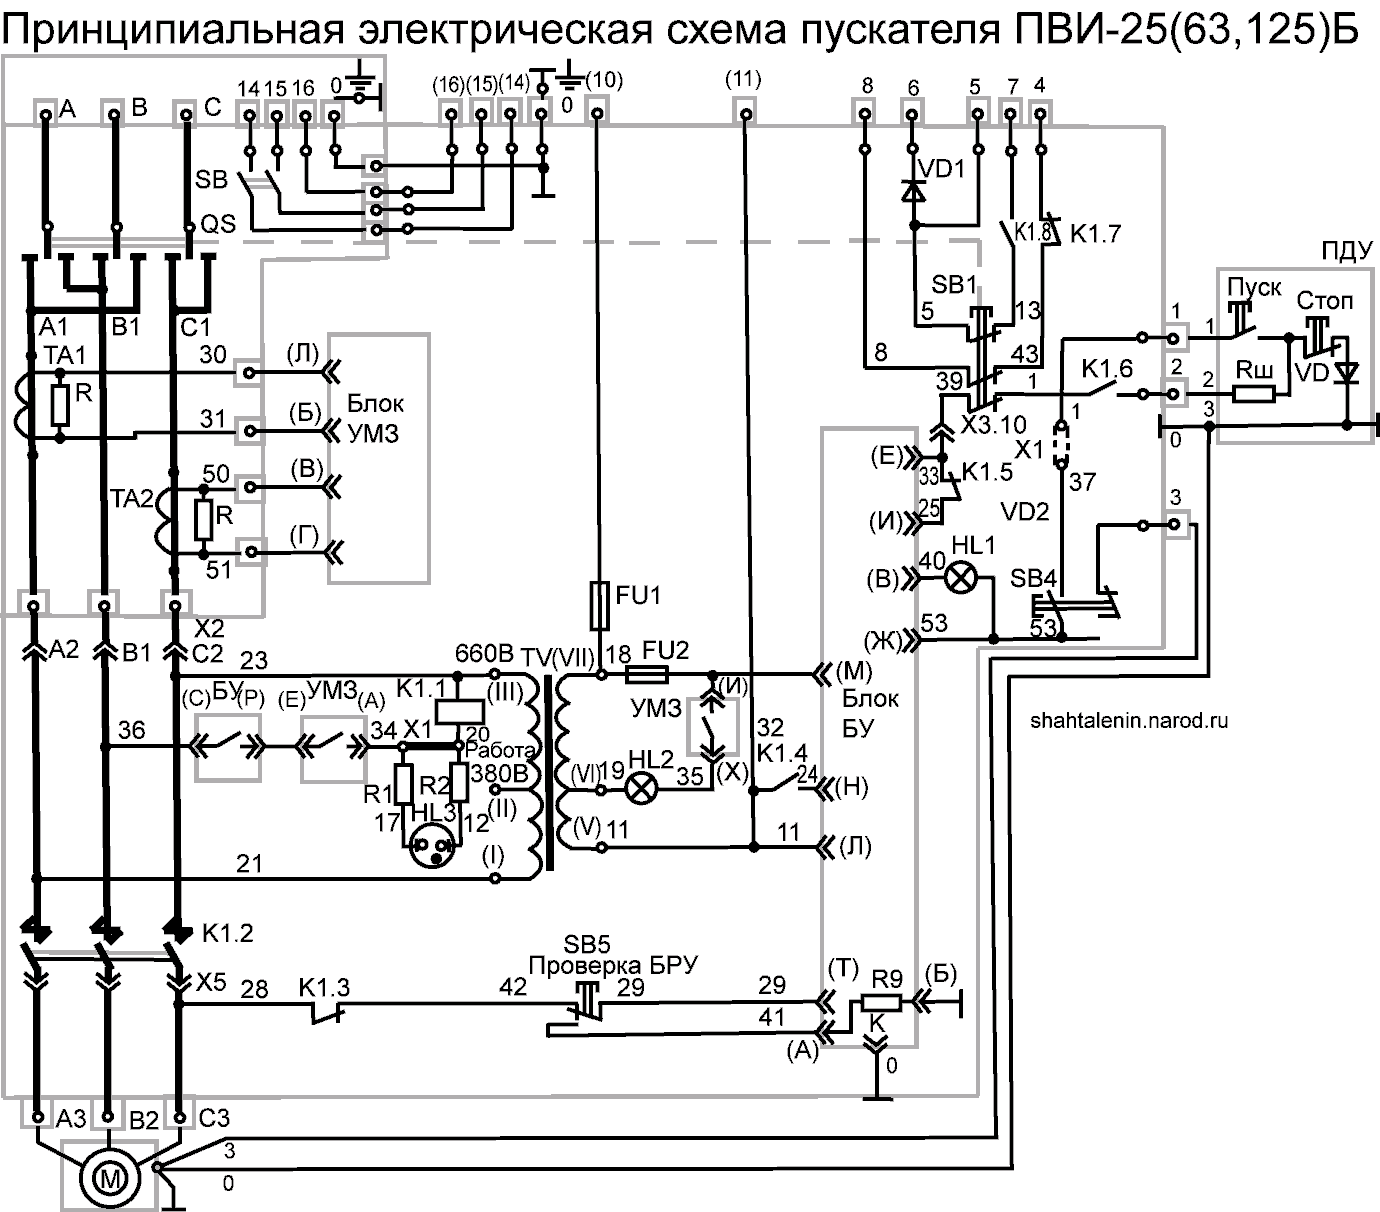 Схема электрическая принципиальная ПВИ-25, 63, 125Б